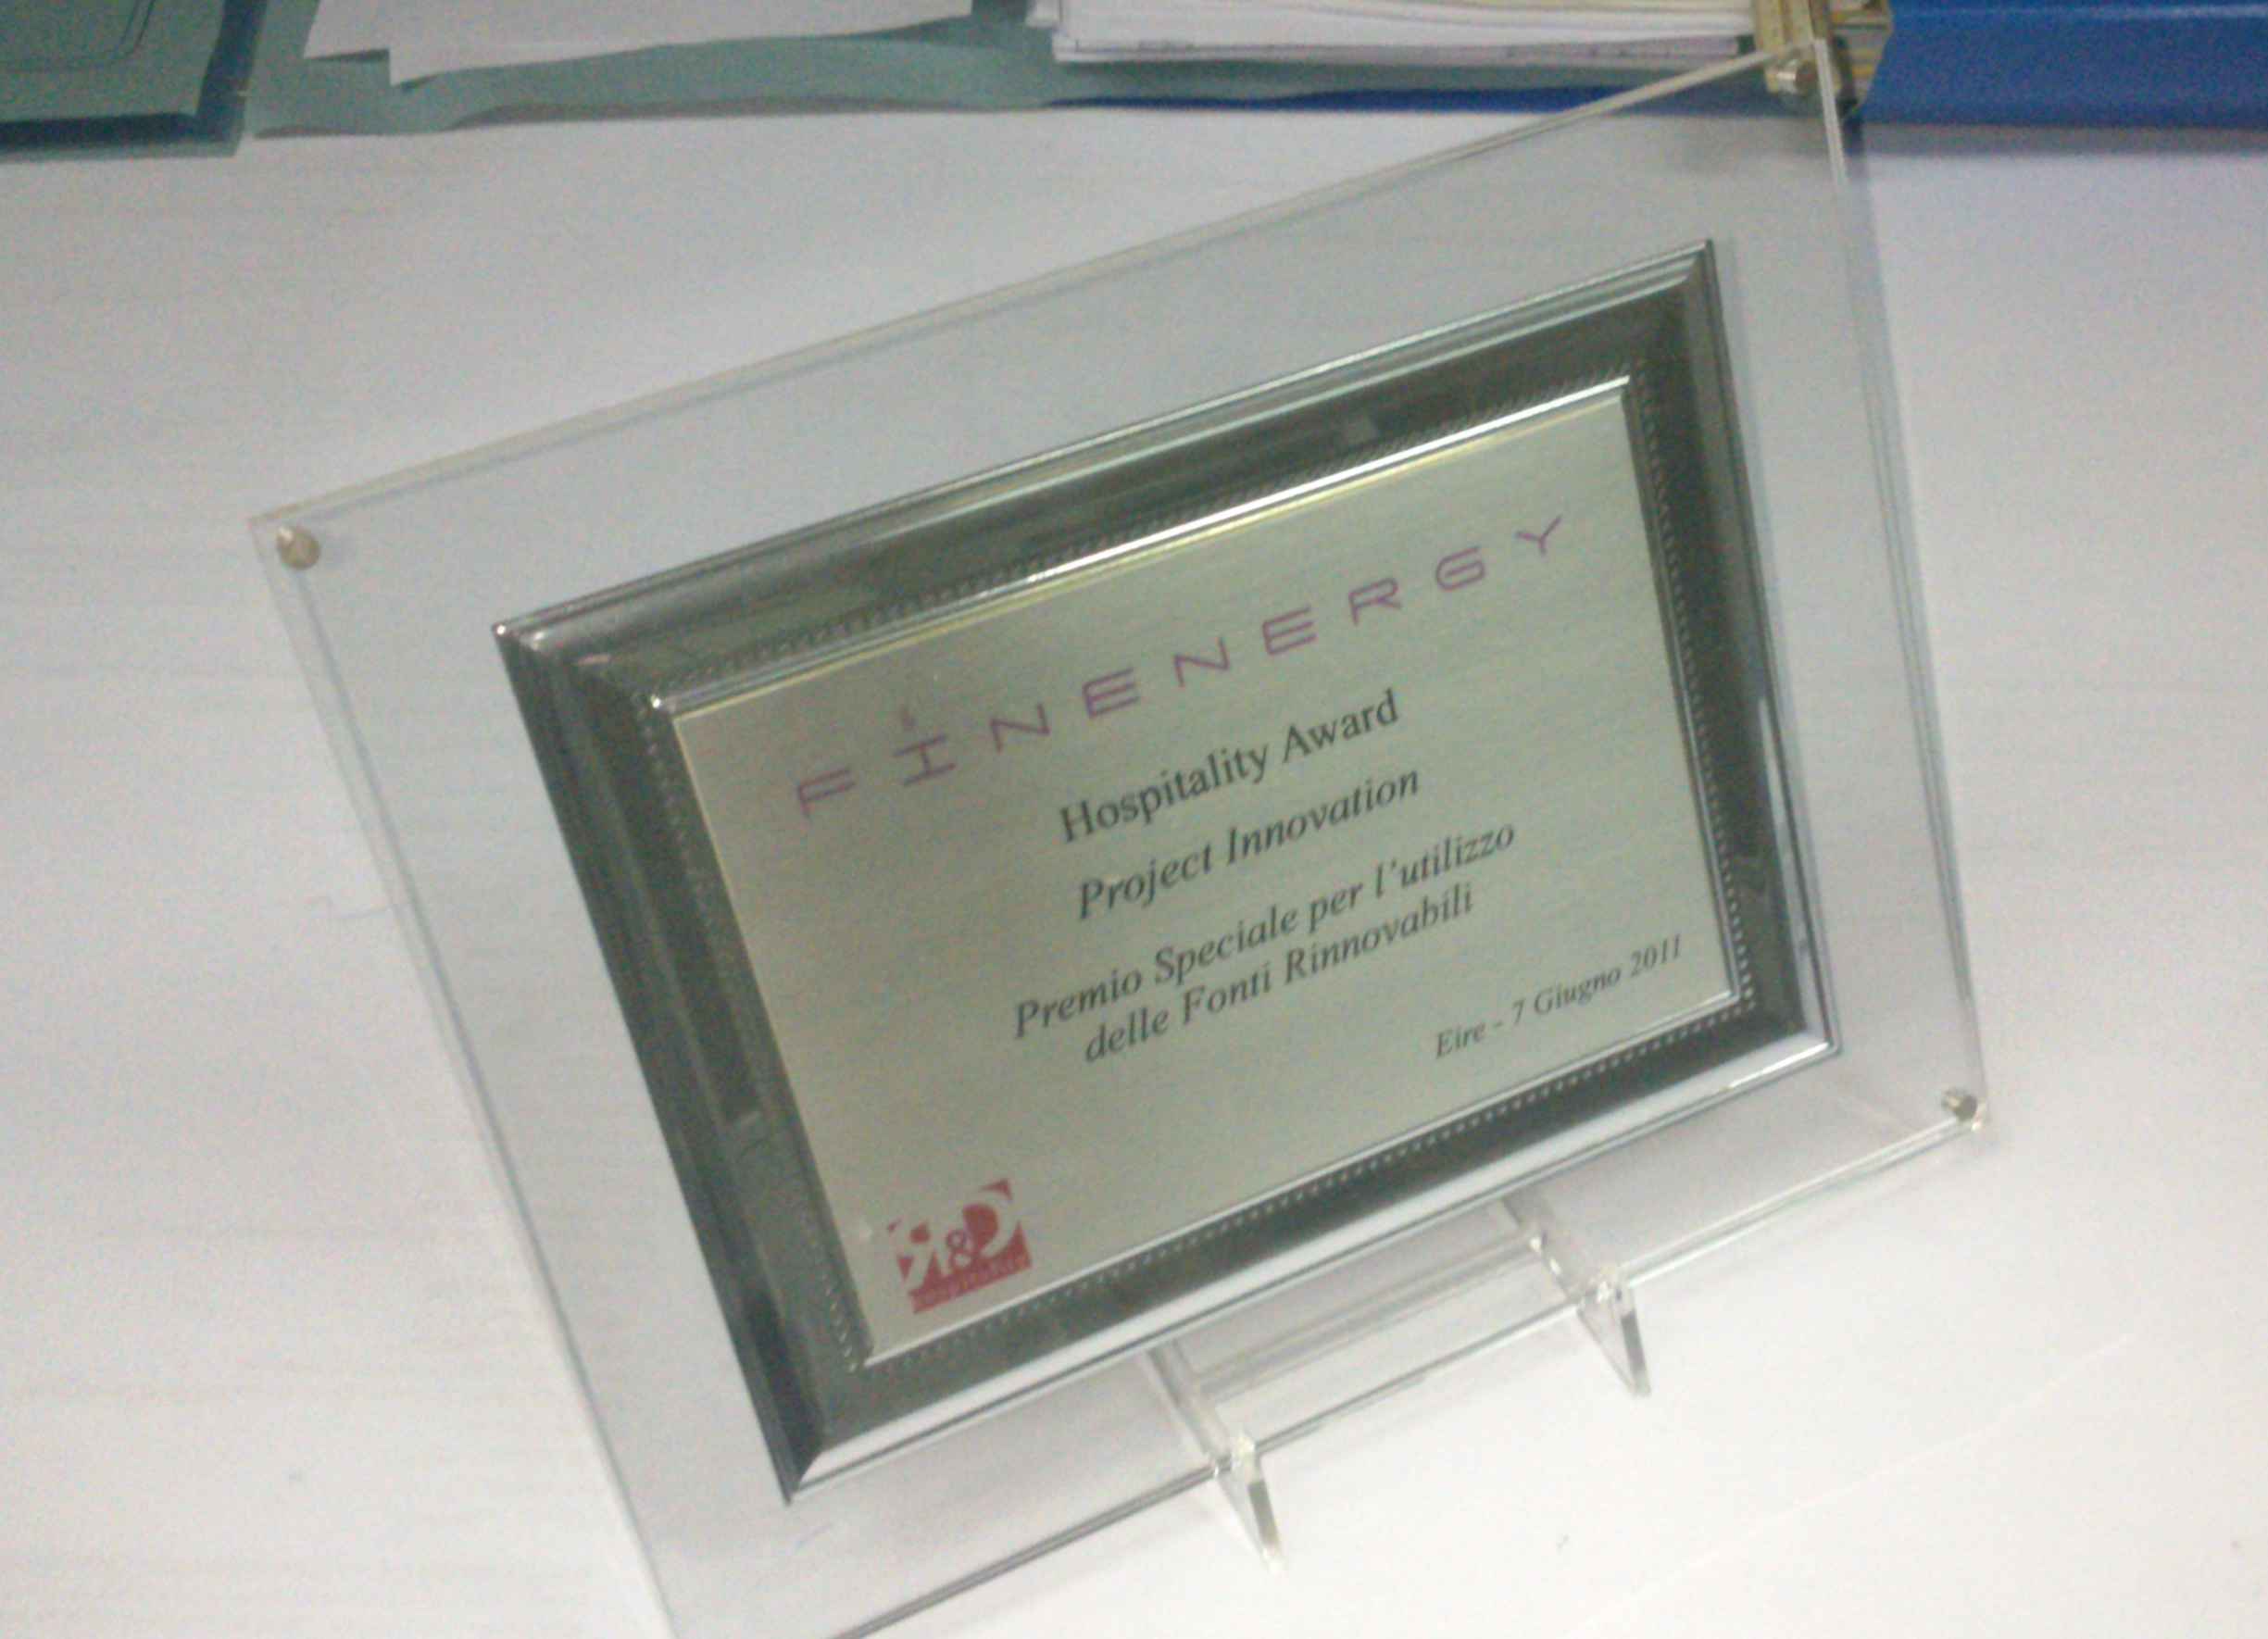 premio speciale per l'utilizzo delle fonti rinnovabili Eire 7 giugno 2011